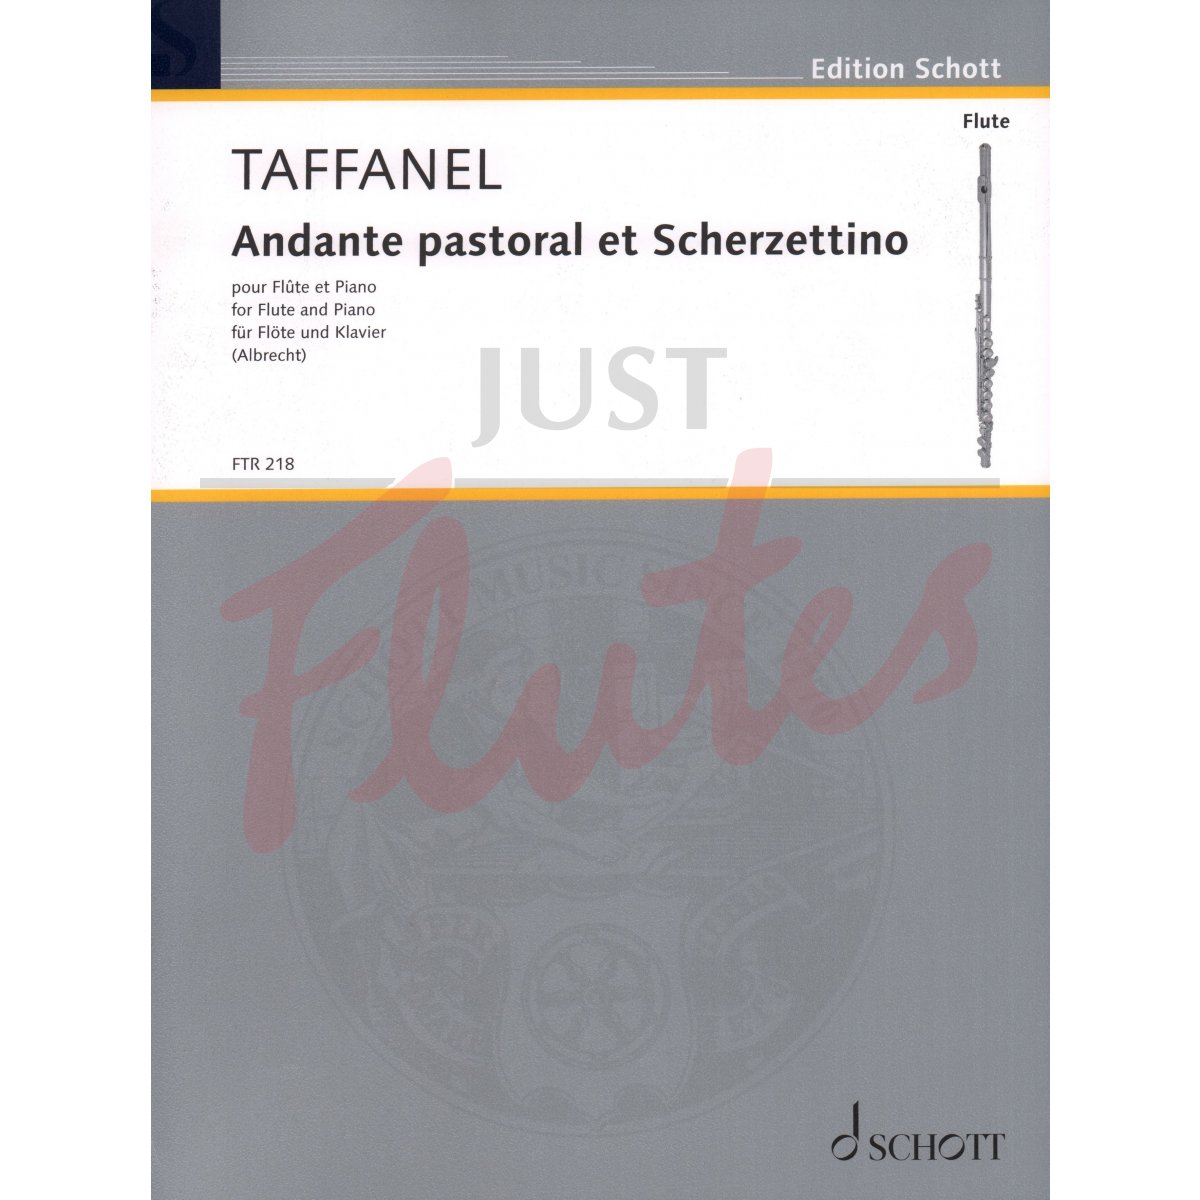 Andante Pastoral et Scherzettino for Flute and Piano